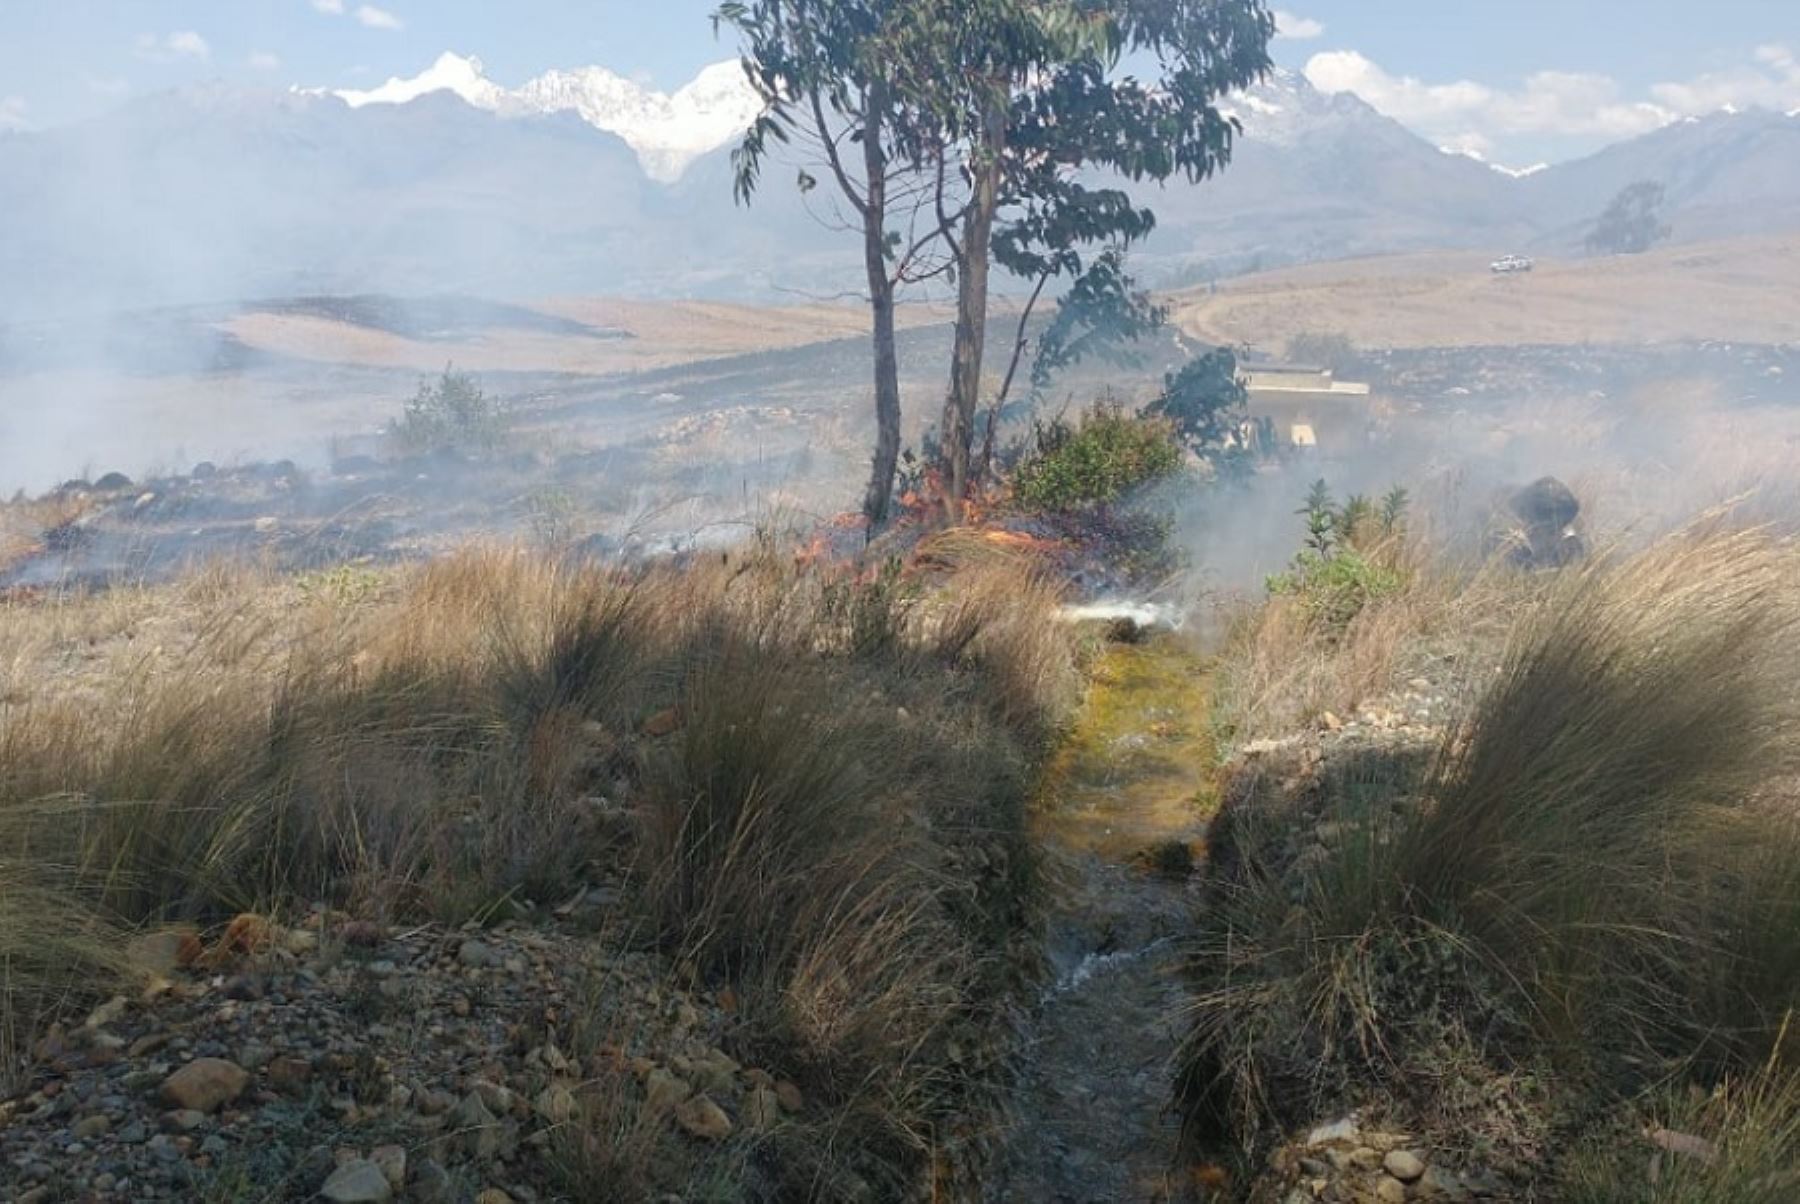 Un incendio forestal consumió cinco hectáreas de cobertura vegetal en el sector de Pukaventana, ubicado al sureste de la ciudad de Huaraz, en la región Áncash.